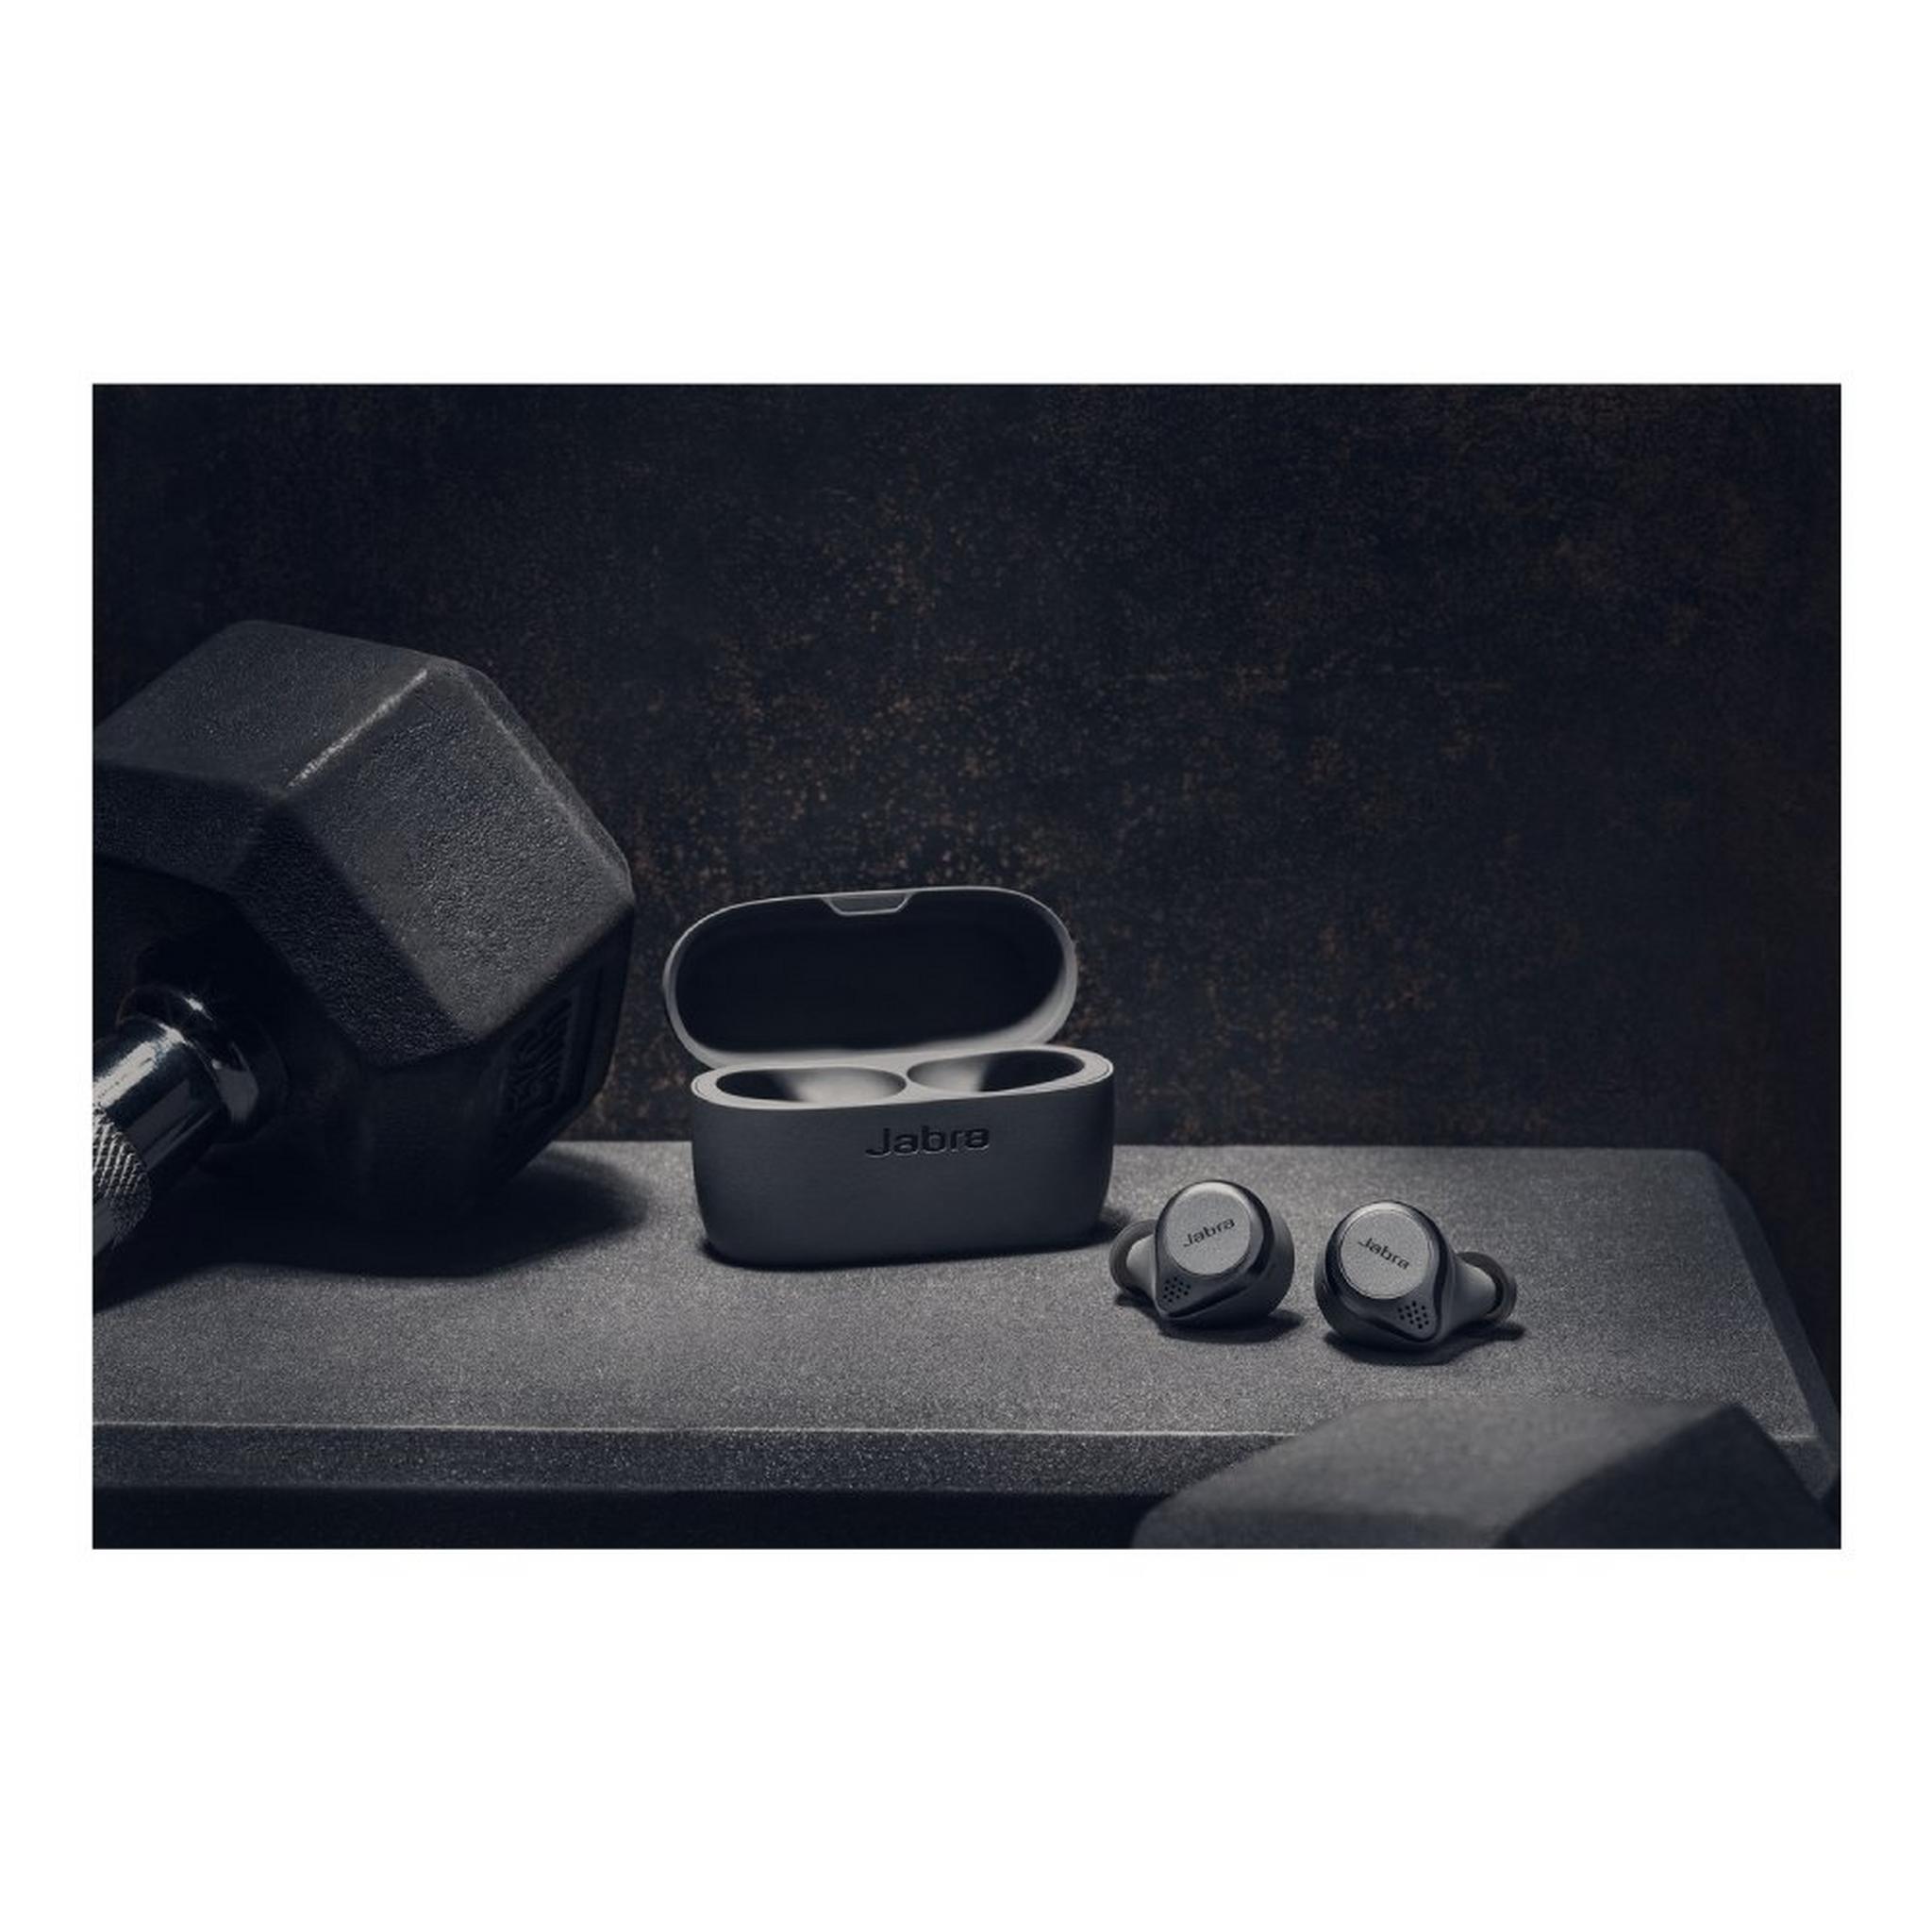 Jabra Elite 85T Active Noise Cancelation, True Wireless Earphones – Grey